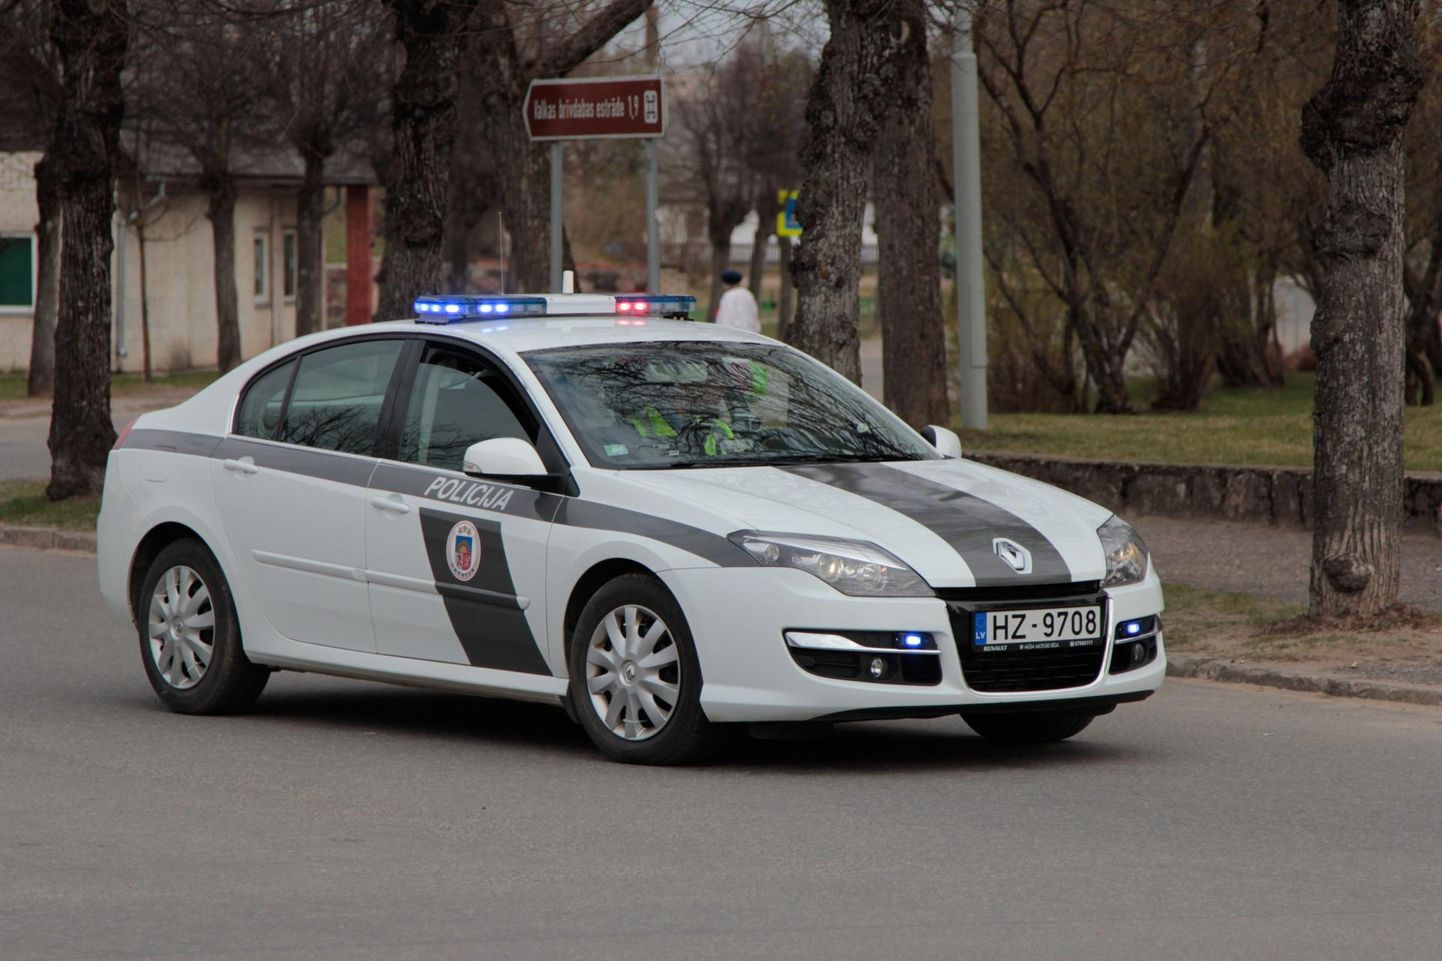 Läti politsei suhtub karantiinireeglite eiramisse karmilt.